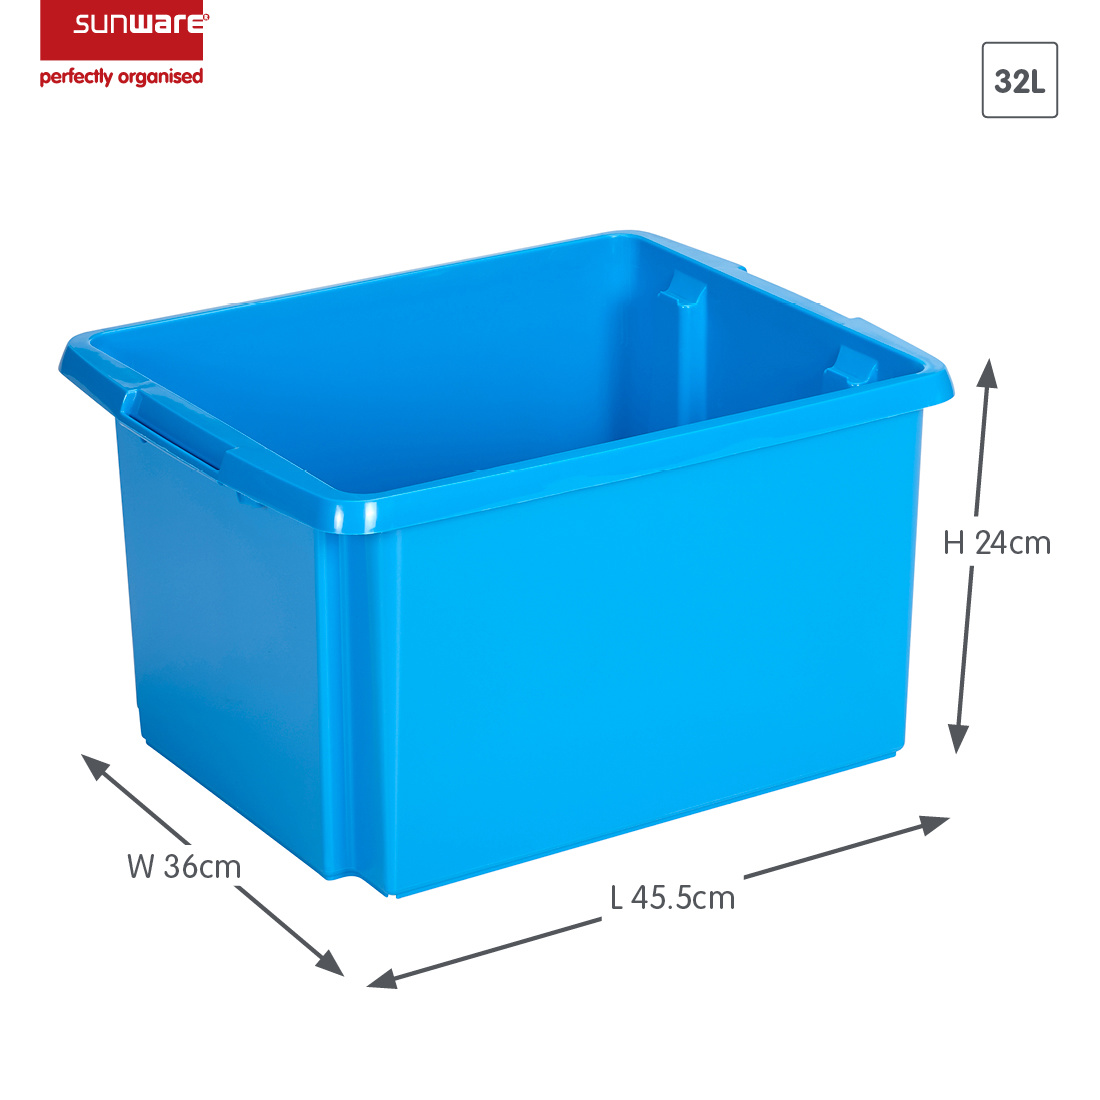 Nesta storage box 32L blue